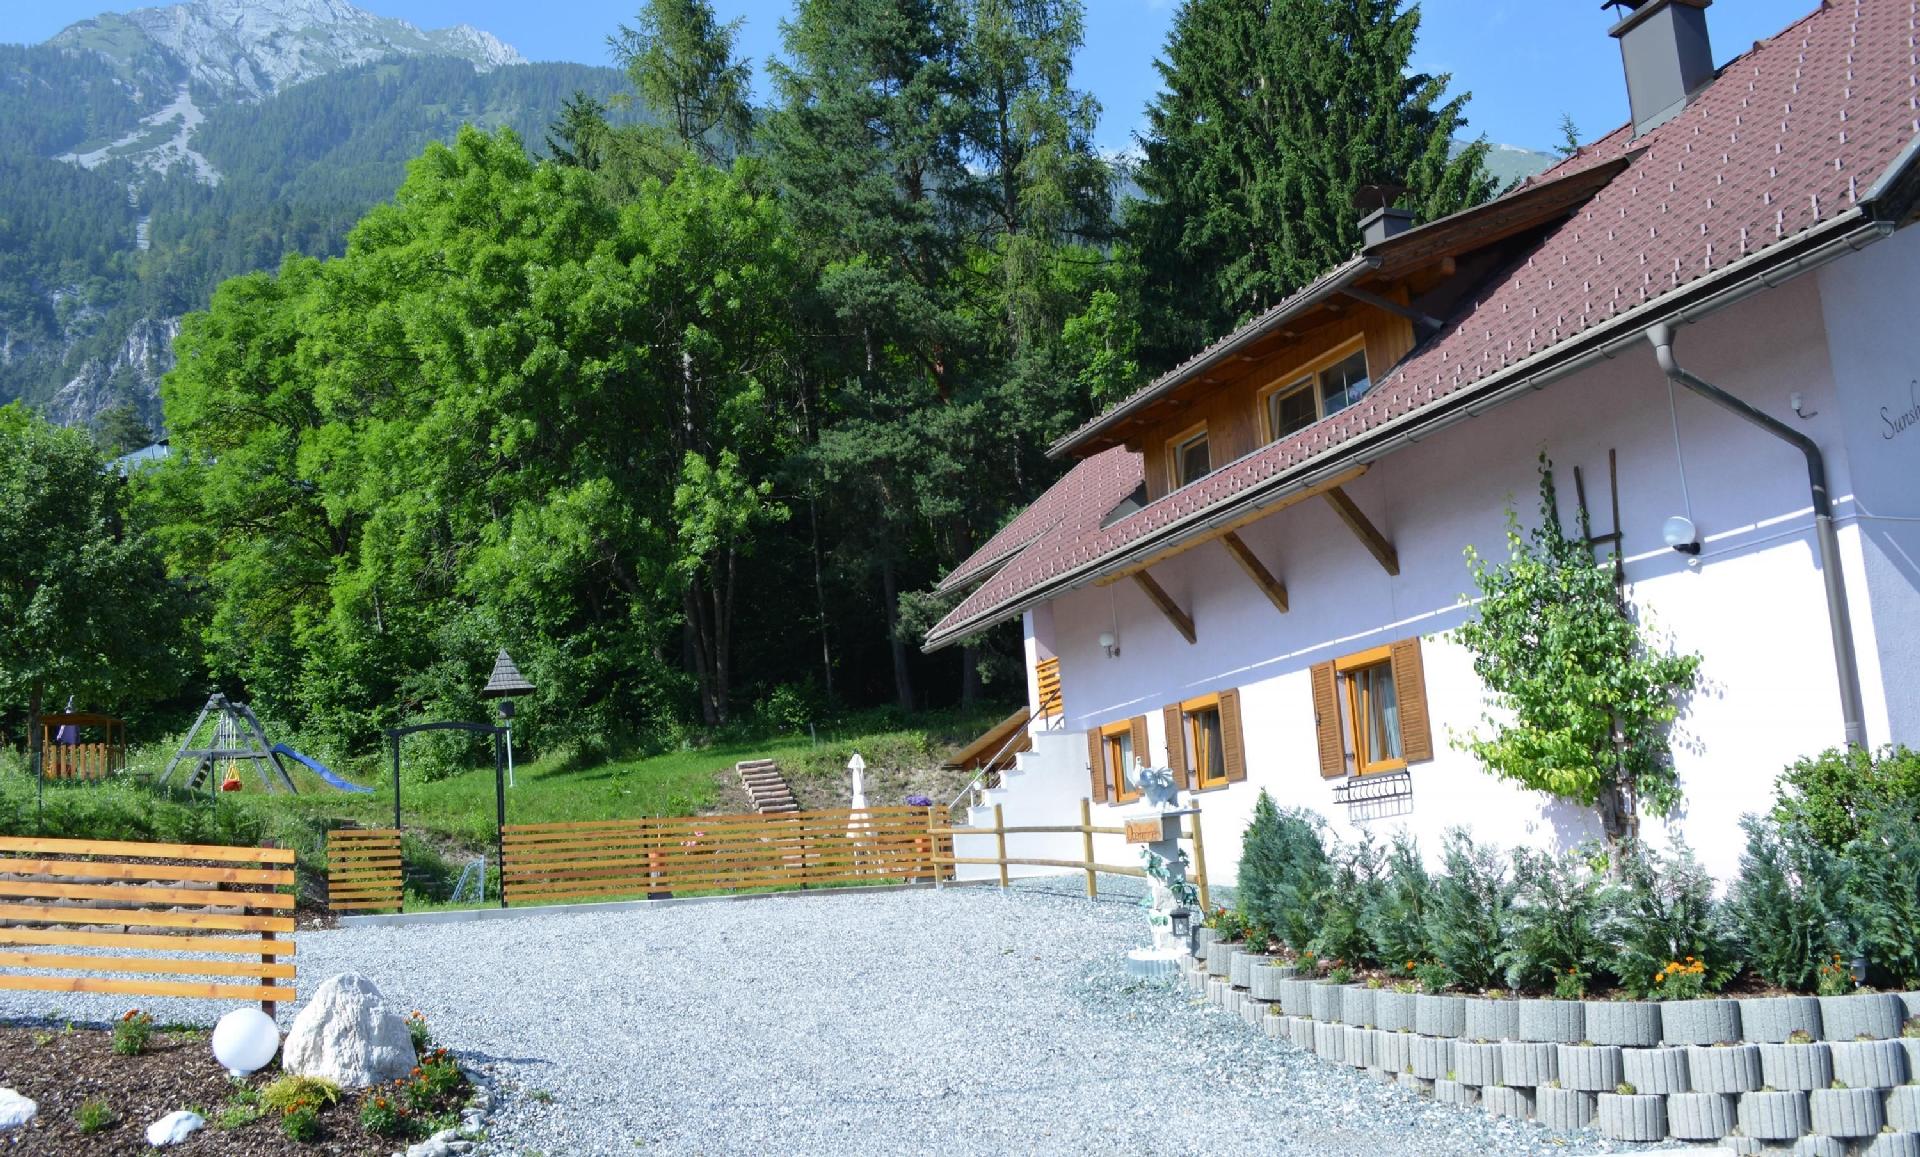 Ferienwohnung in Hermagor Pressegger See mit eigen Ferienhaus in Ãsterreich